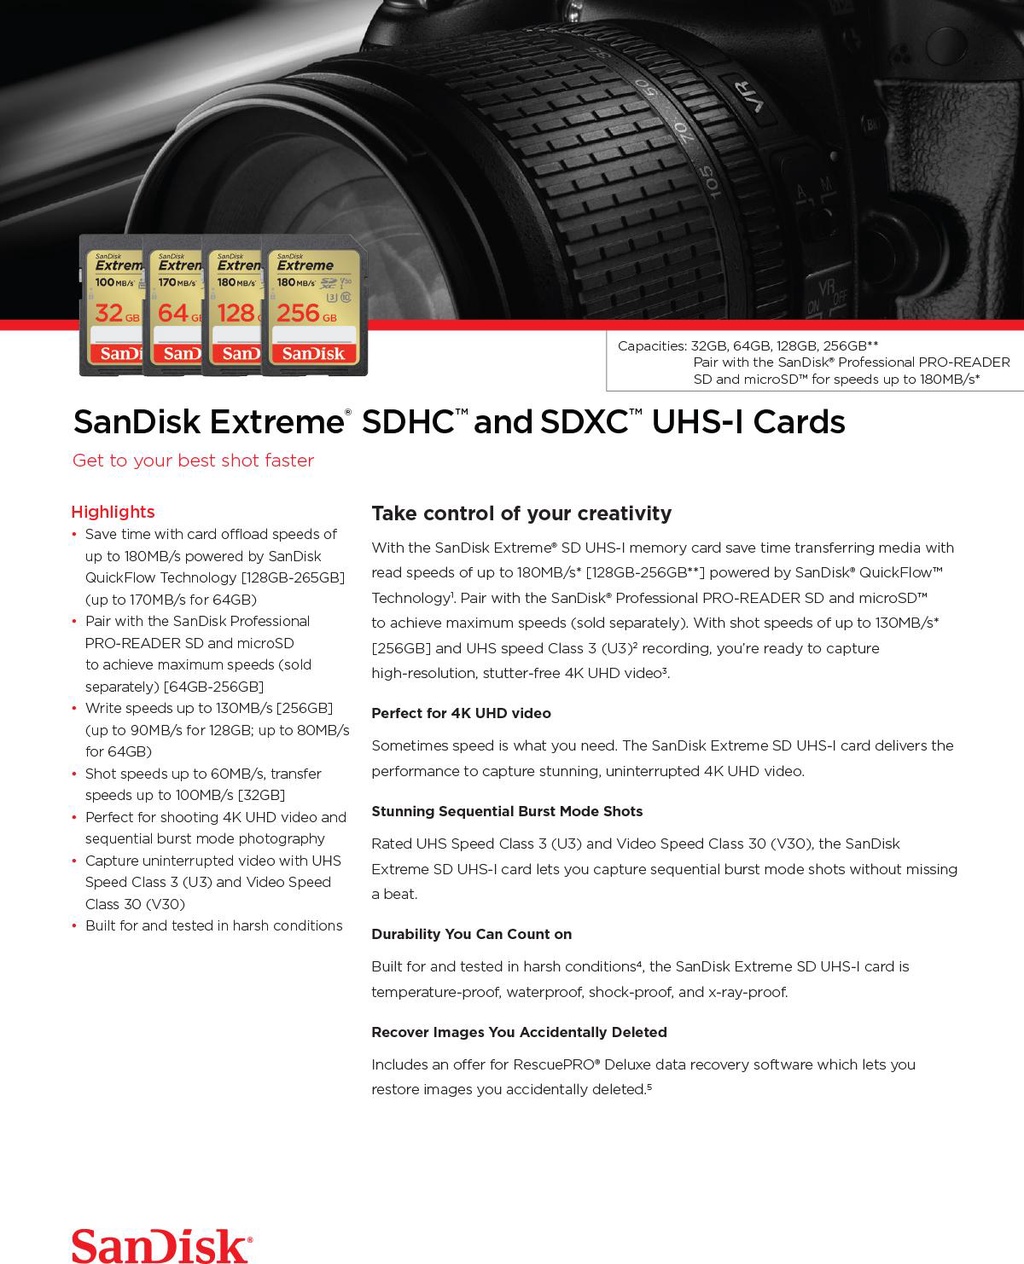 ข้อมูลเพิ่มเติมของ SanDisk Extreme SD Card SDXC 64GB Speed 170MB/s เขียน 80MB/s (SDSDXV2-064G-GNCIN-1) เมมโมรี่ การ์ด SDCARD แซนดิส ประกัน Lifetime Synnex